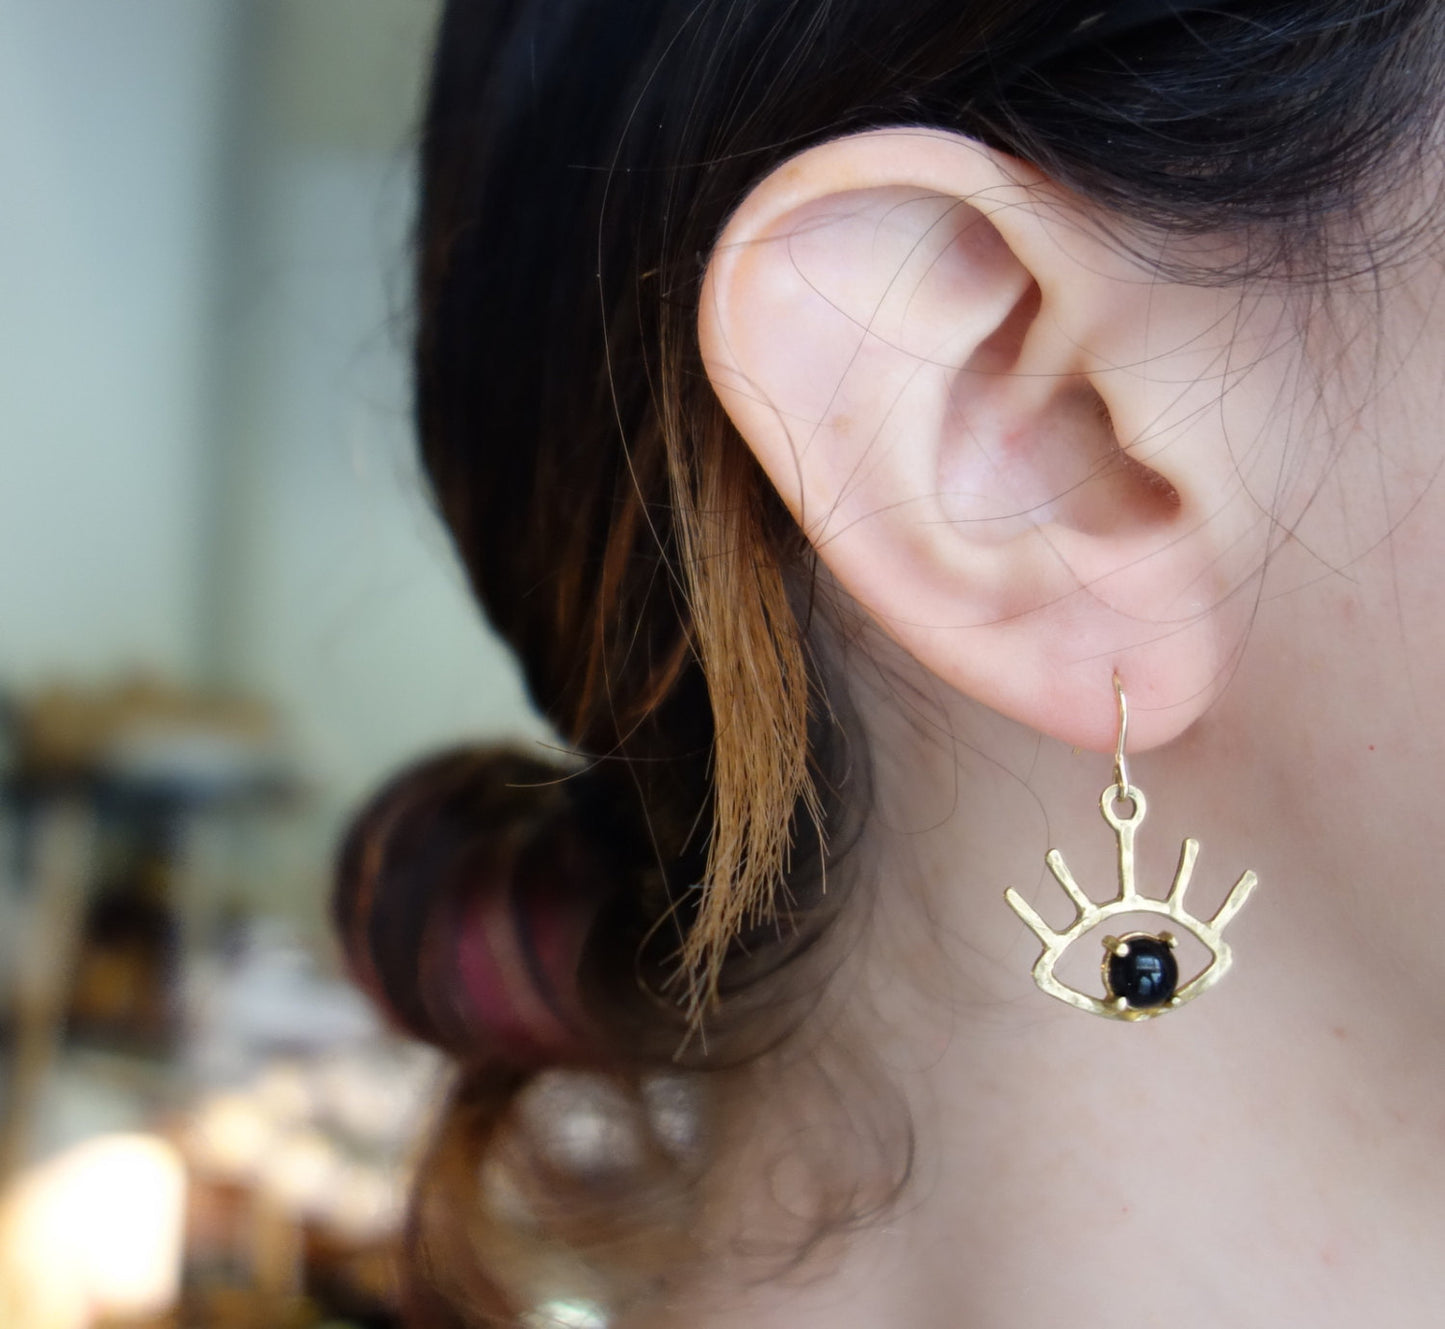 Beholder Earrings: Brass and Black Onyx Eye Dangle Earrings